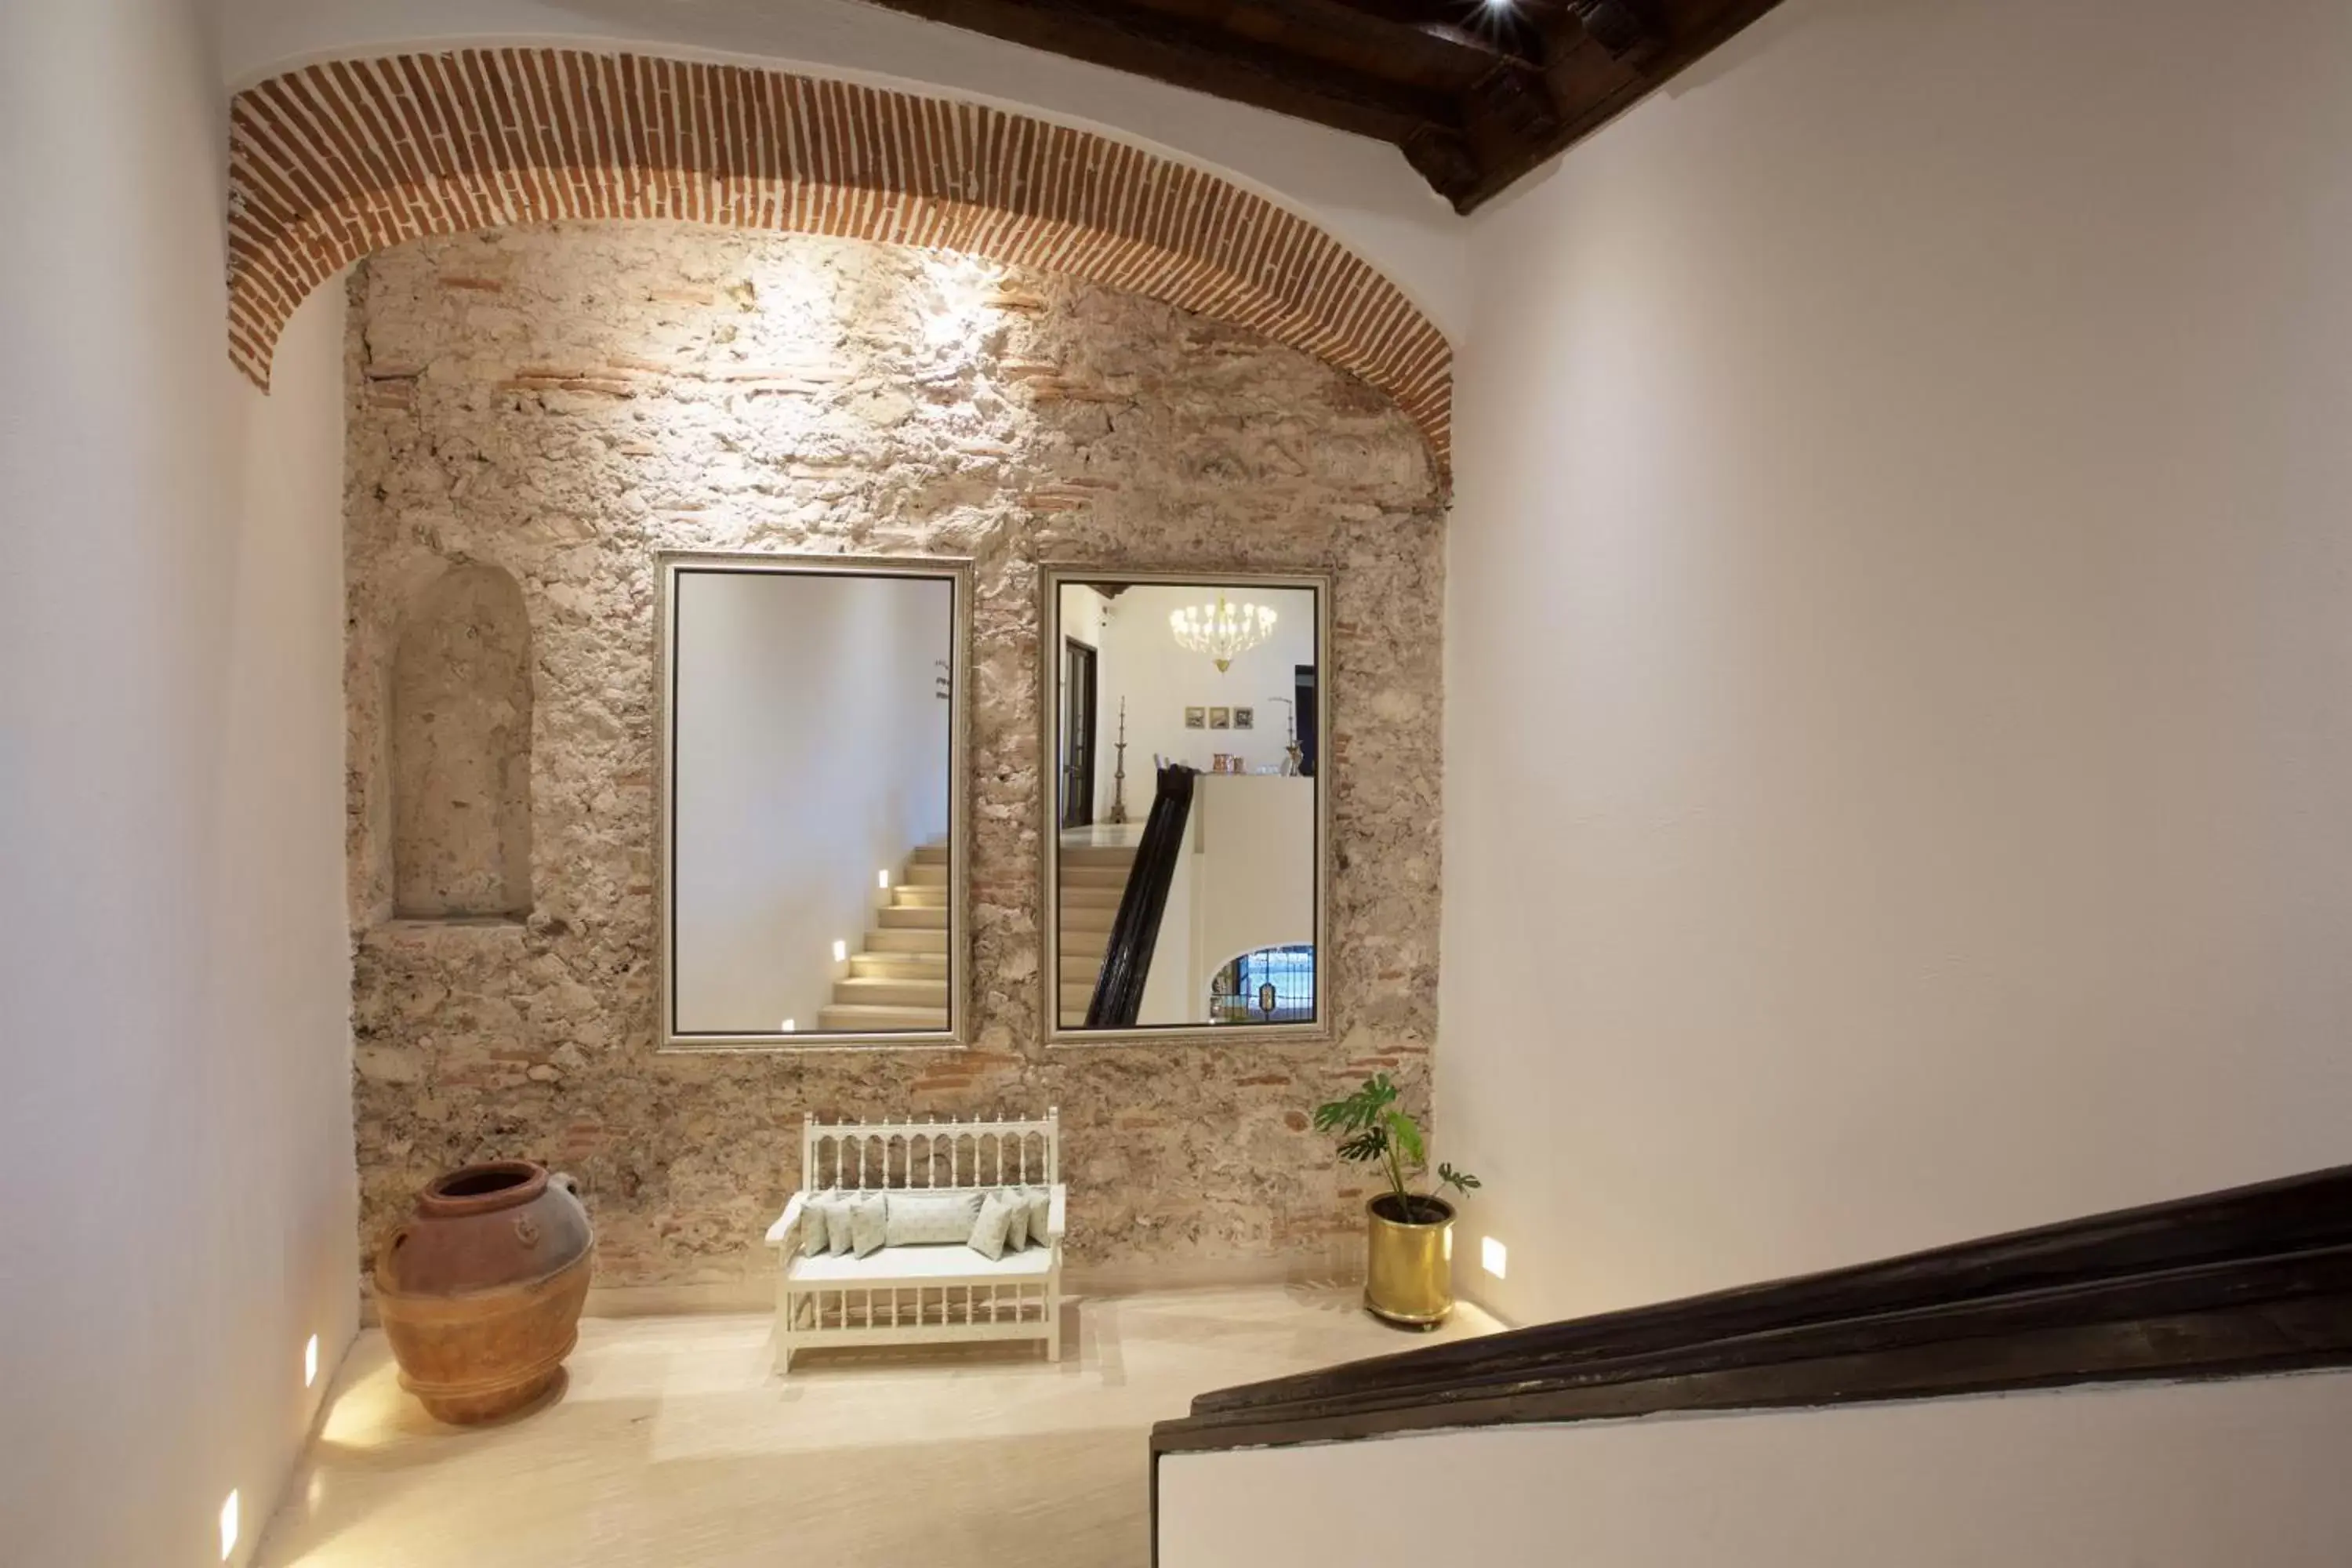 Area and facilities, Bathroom in Hotel Capellán de Getsemaní